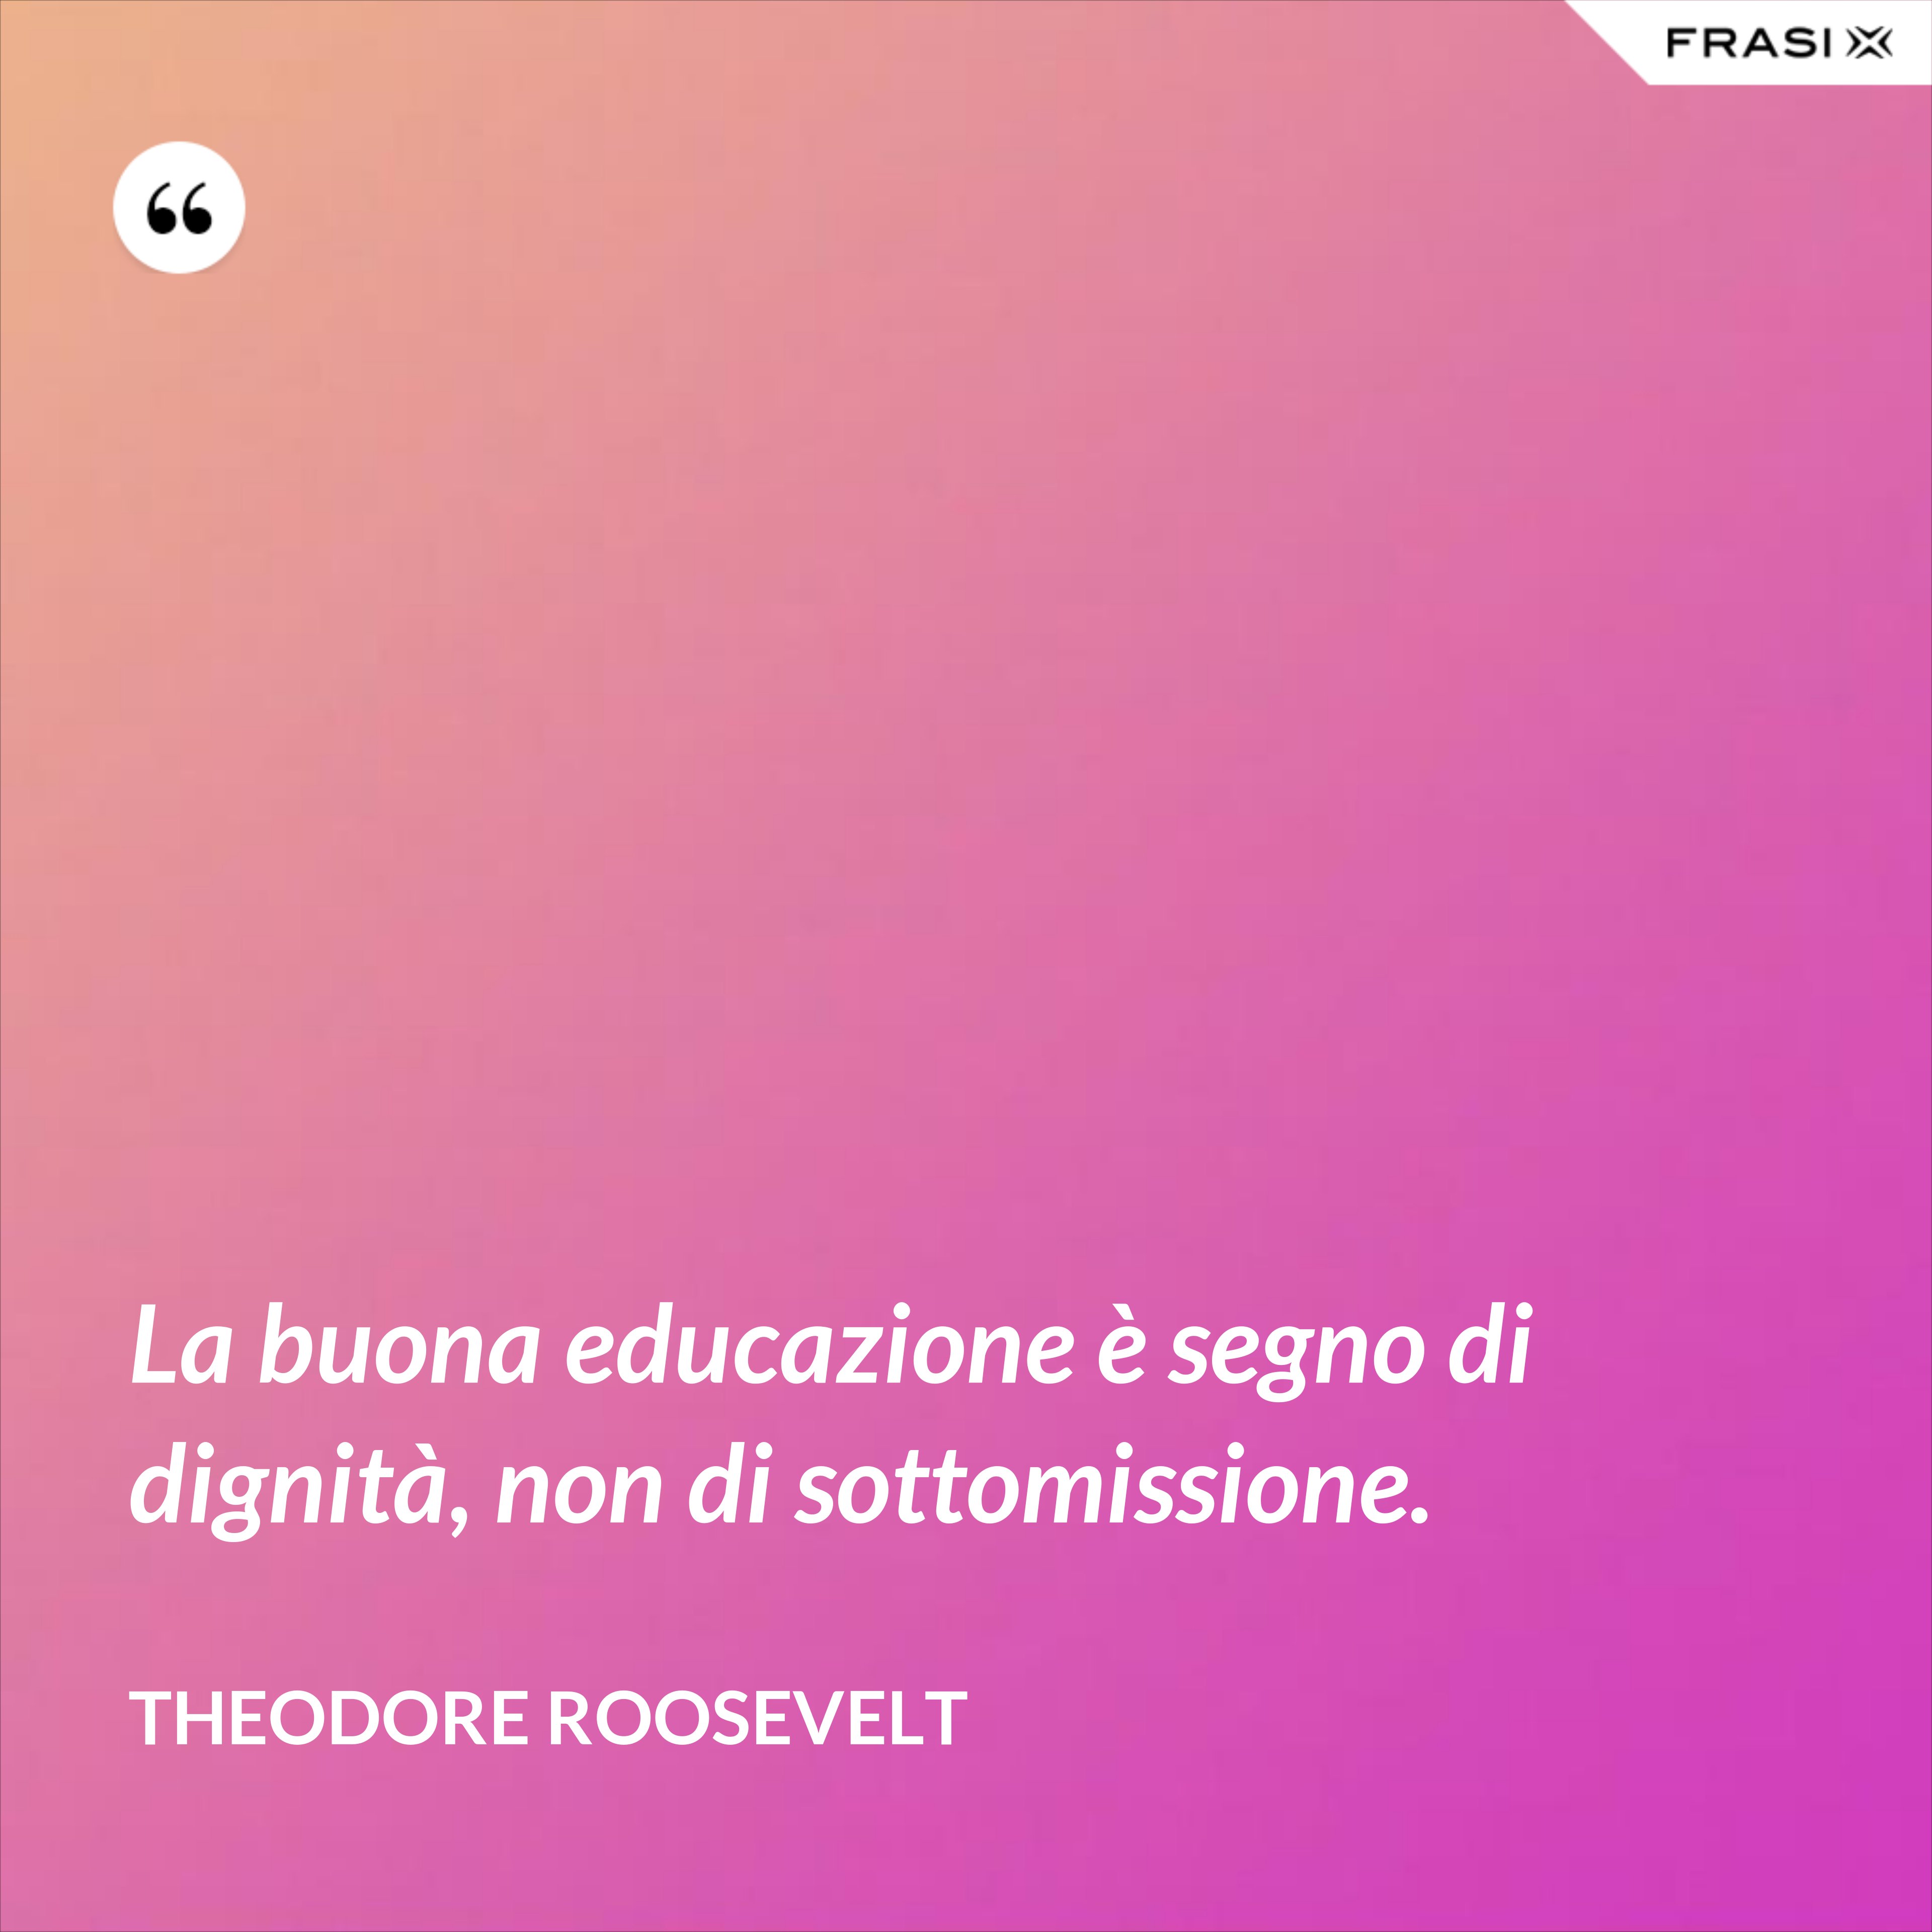 La buona educazione è segno di dignità, non di sottomissione. - Theodore Roosevelt